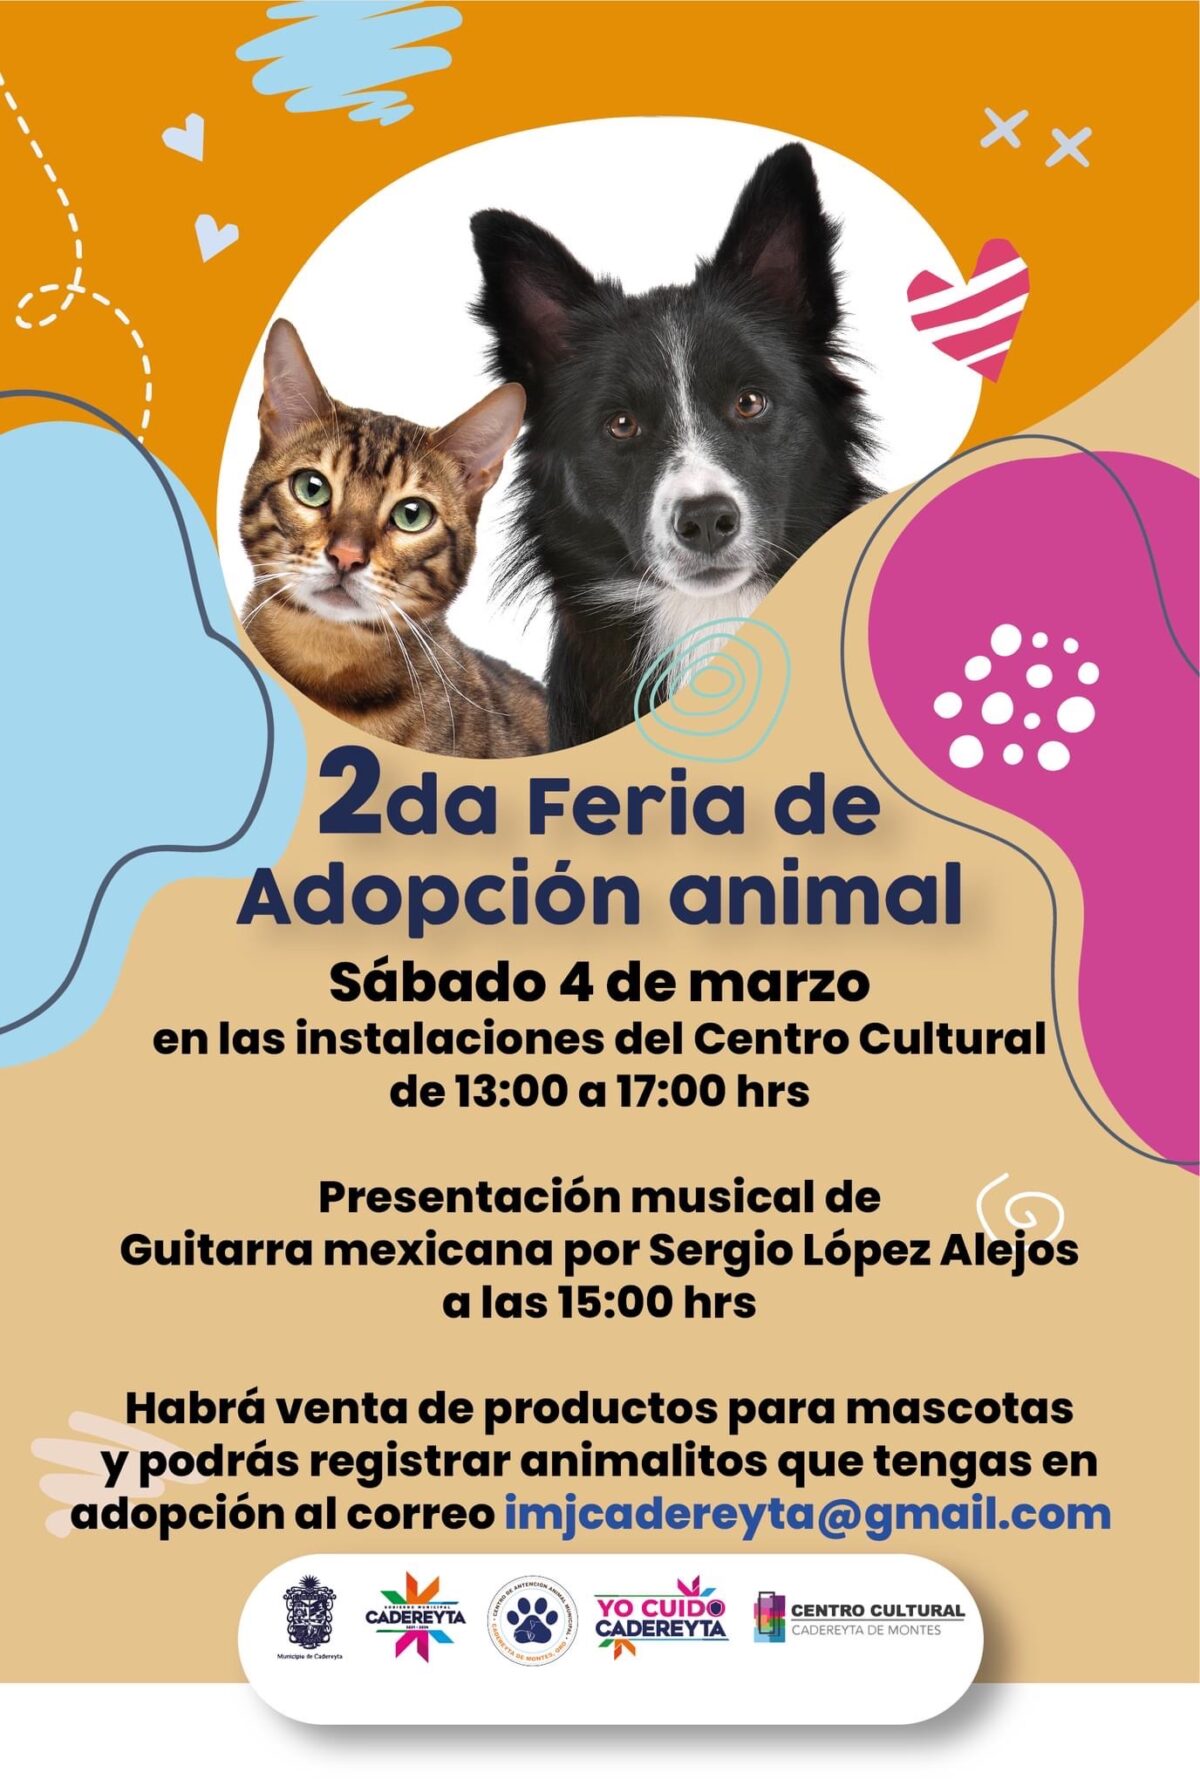 Feria de Adopción Animal en Cadereyta este sábado